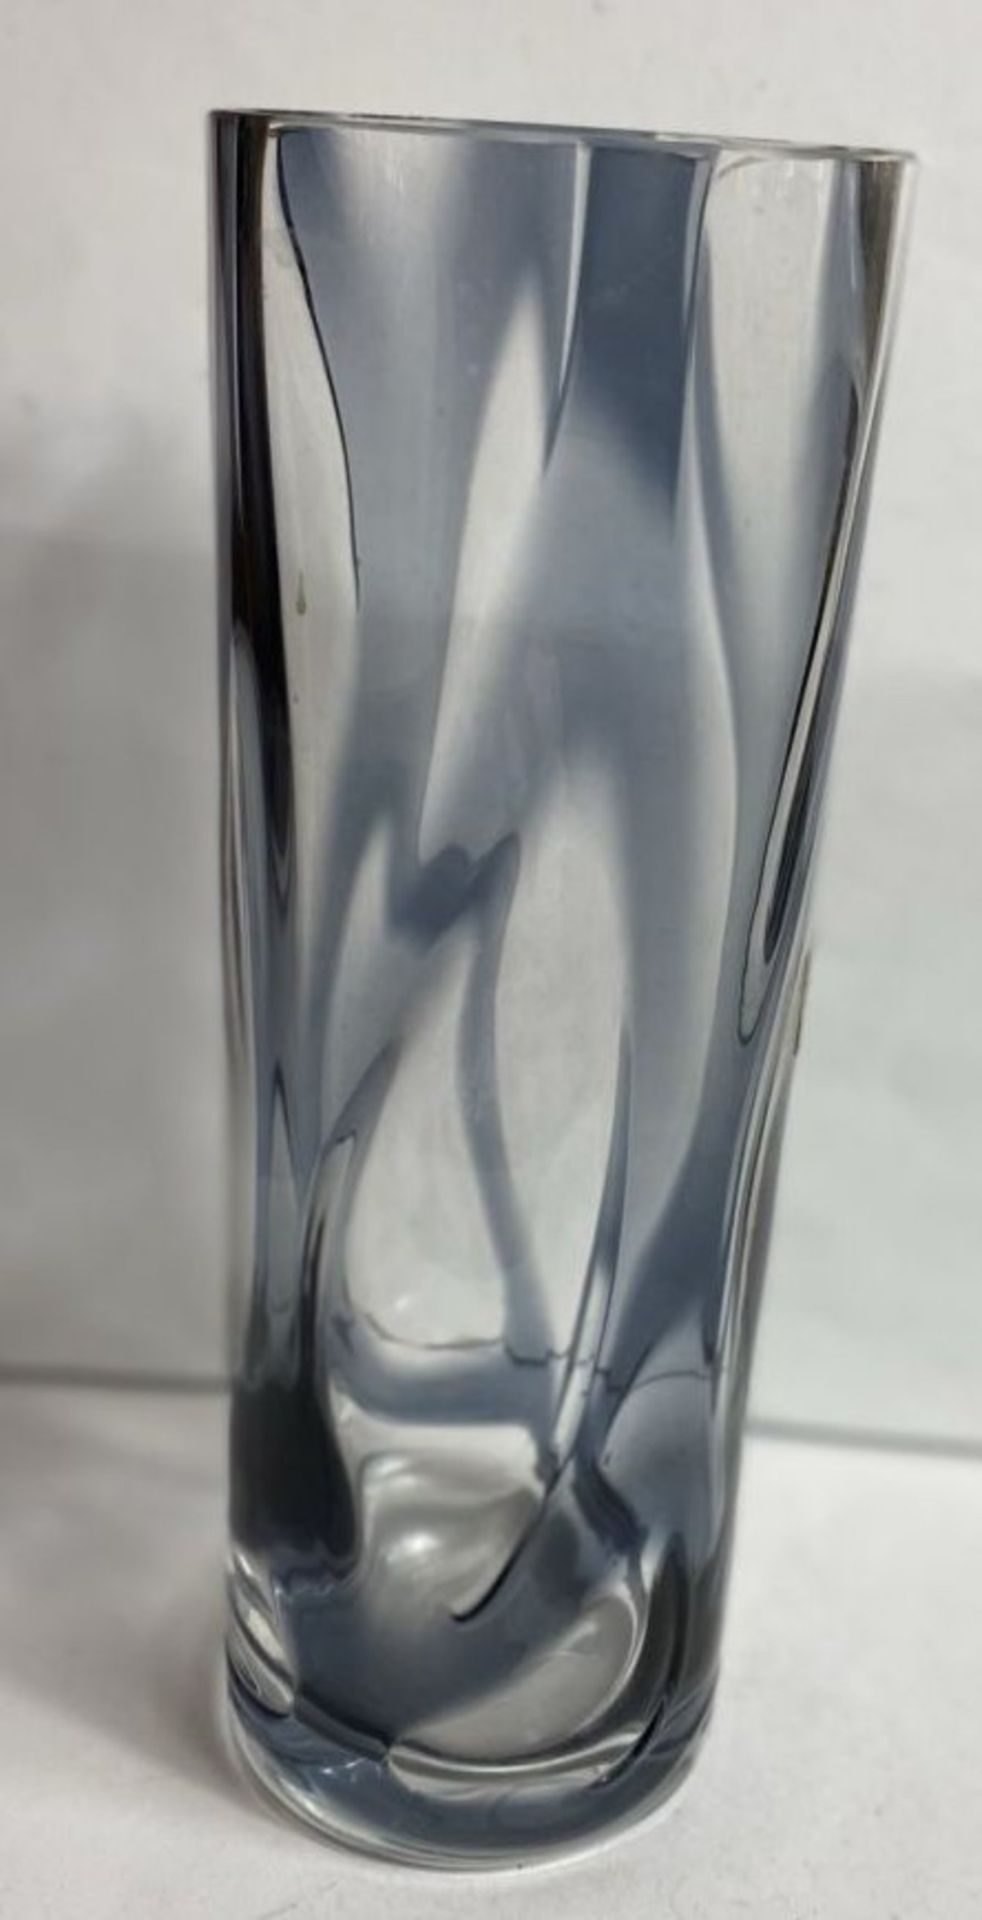 Kunstglasvase "Gistl Glas" blau/klar, H-21 cm, D-8 cm - Bild 4 aus 7